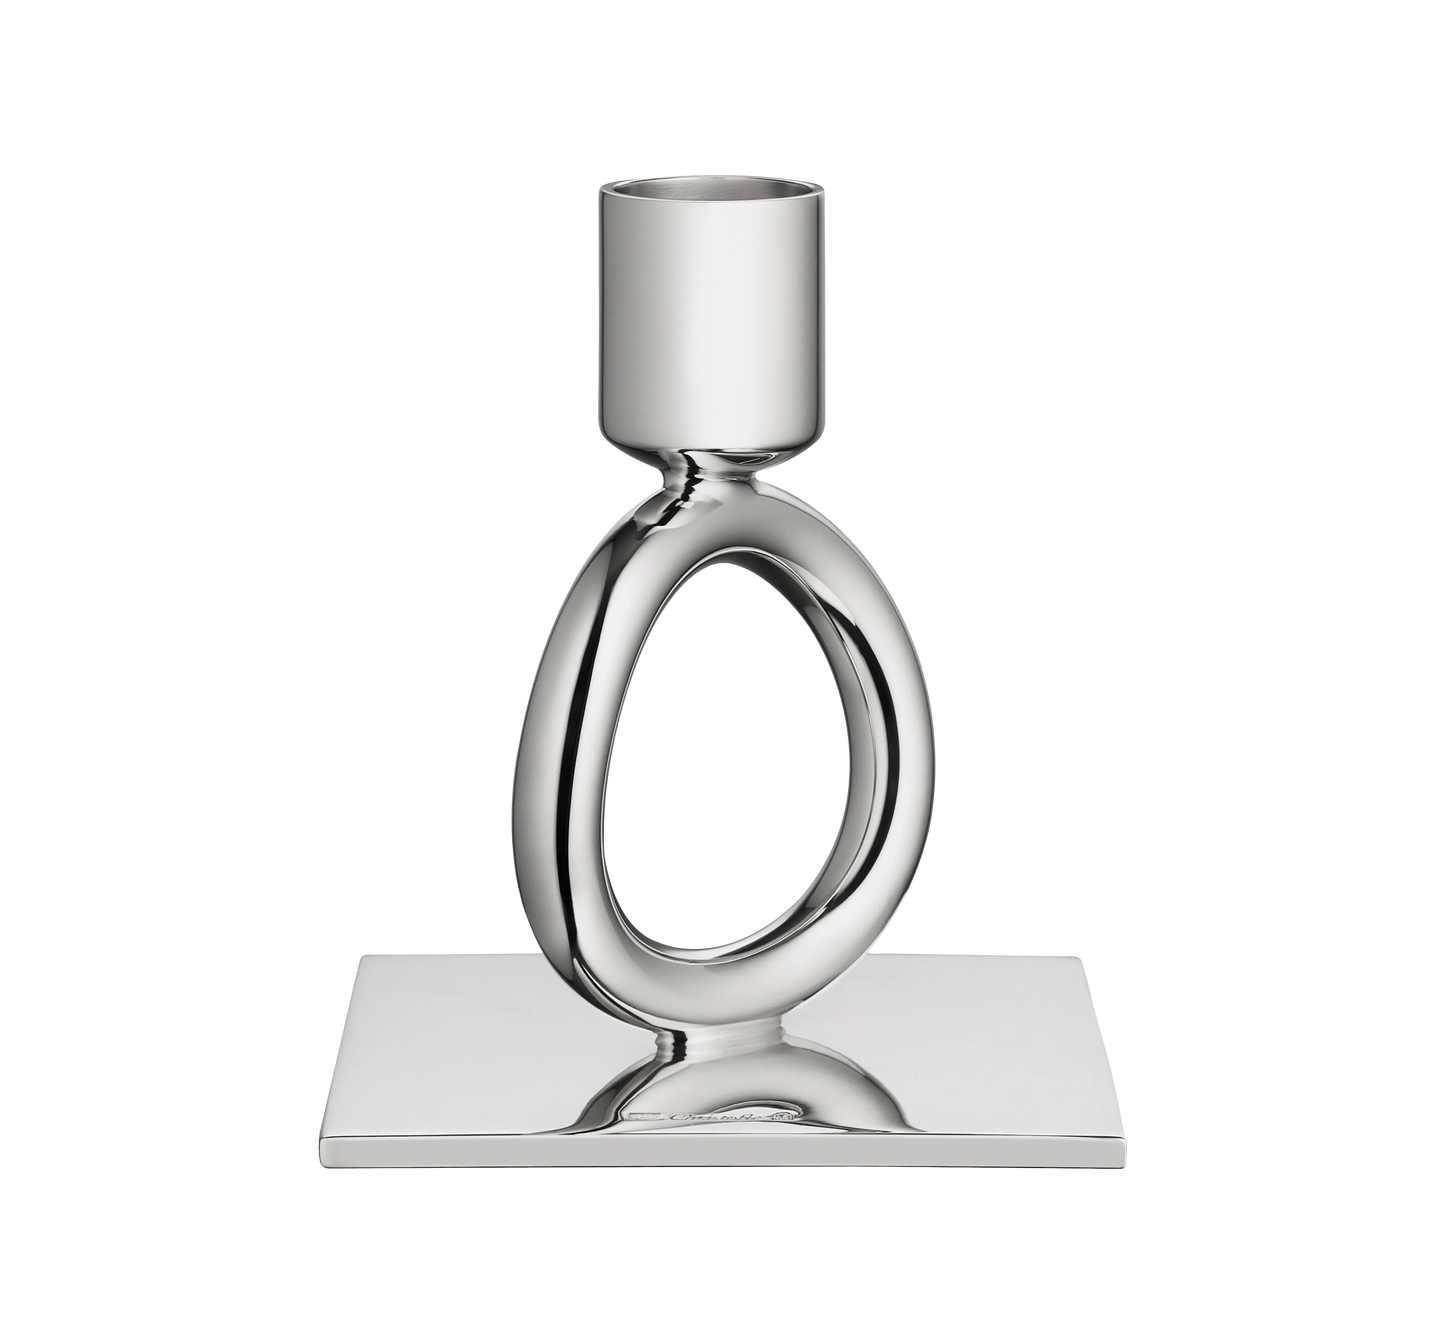 Christofle Vertigo Silver-Plated Single-Ring Candlestick Holder